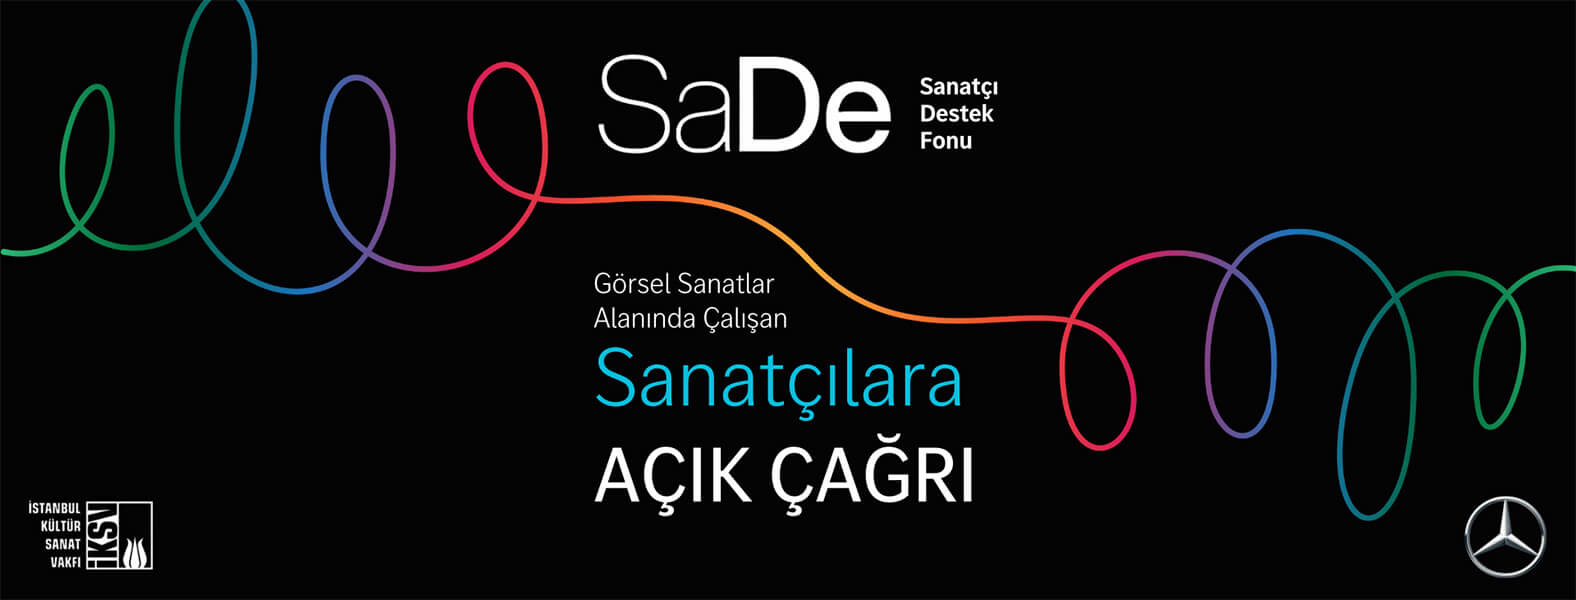 SaDe (Sanatçı Destek Fonu)